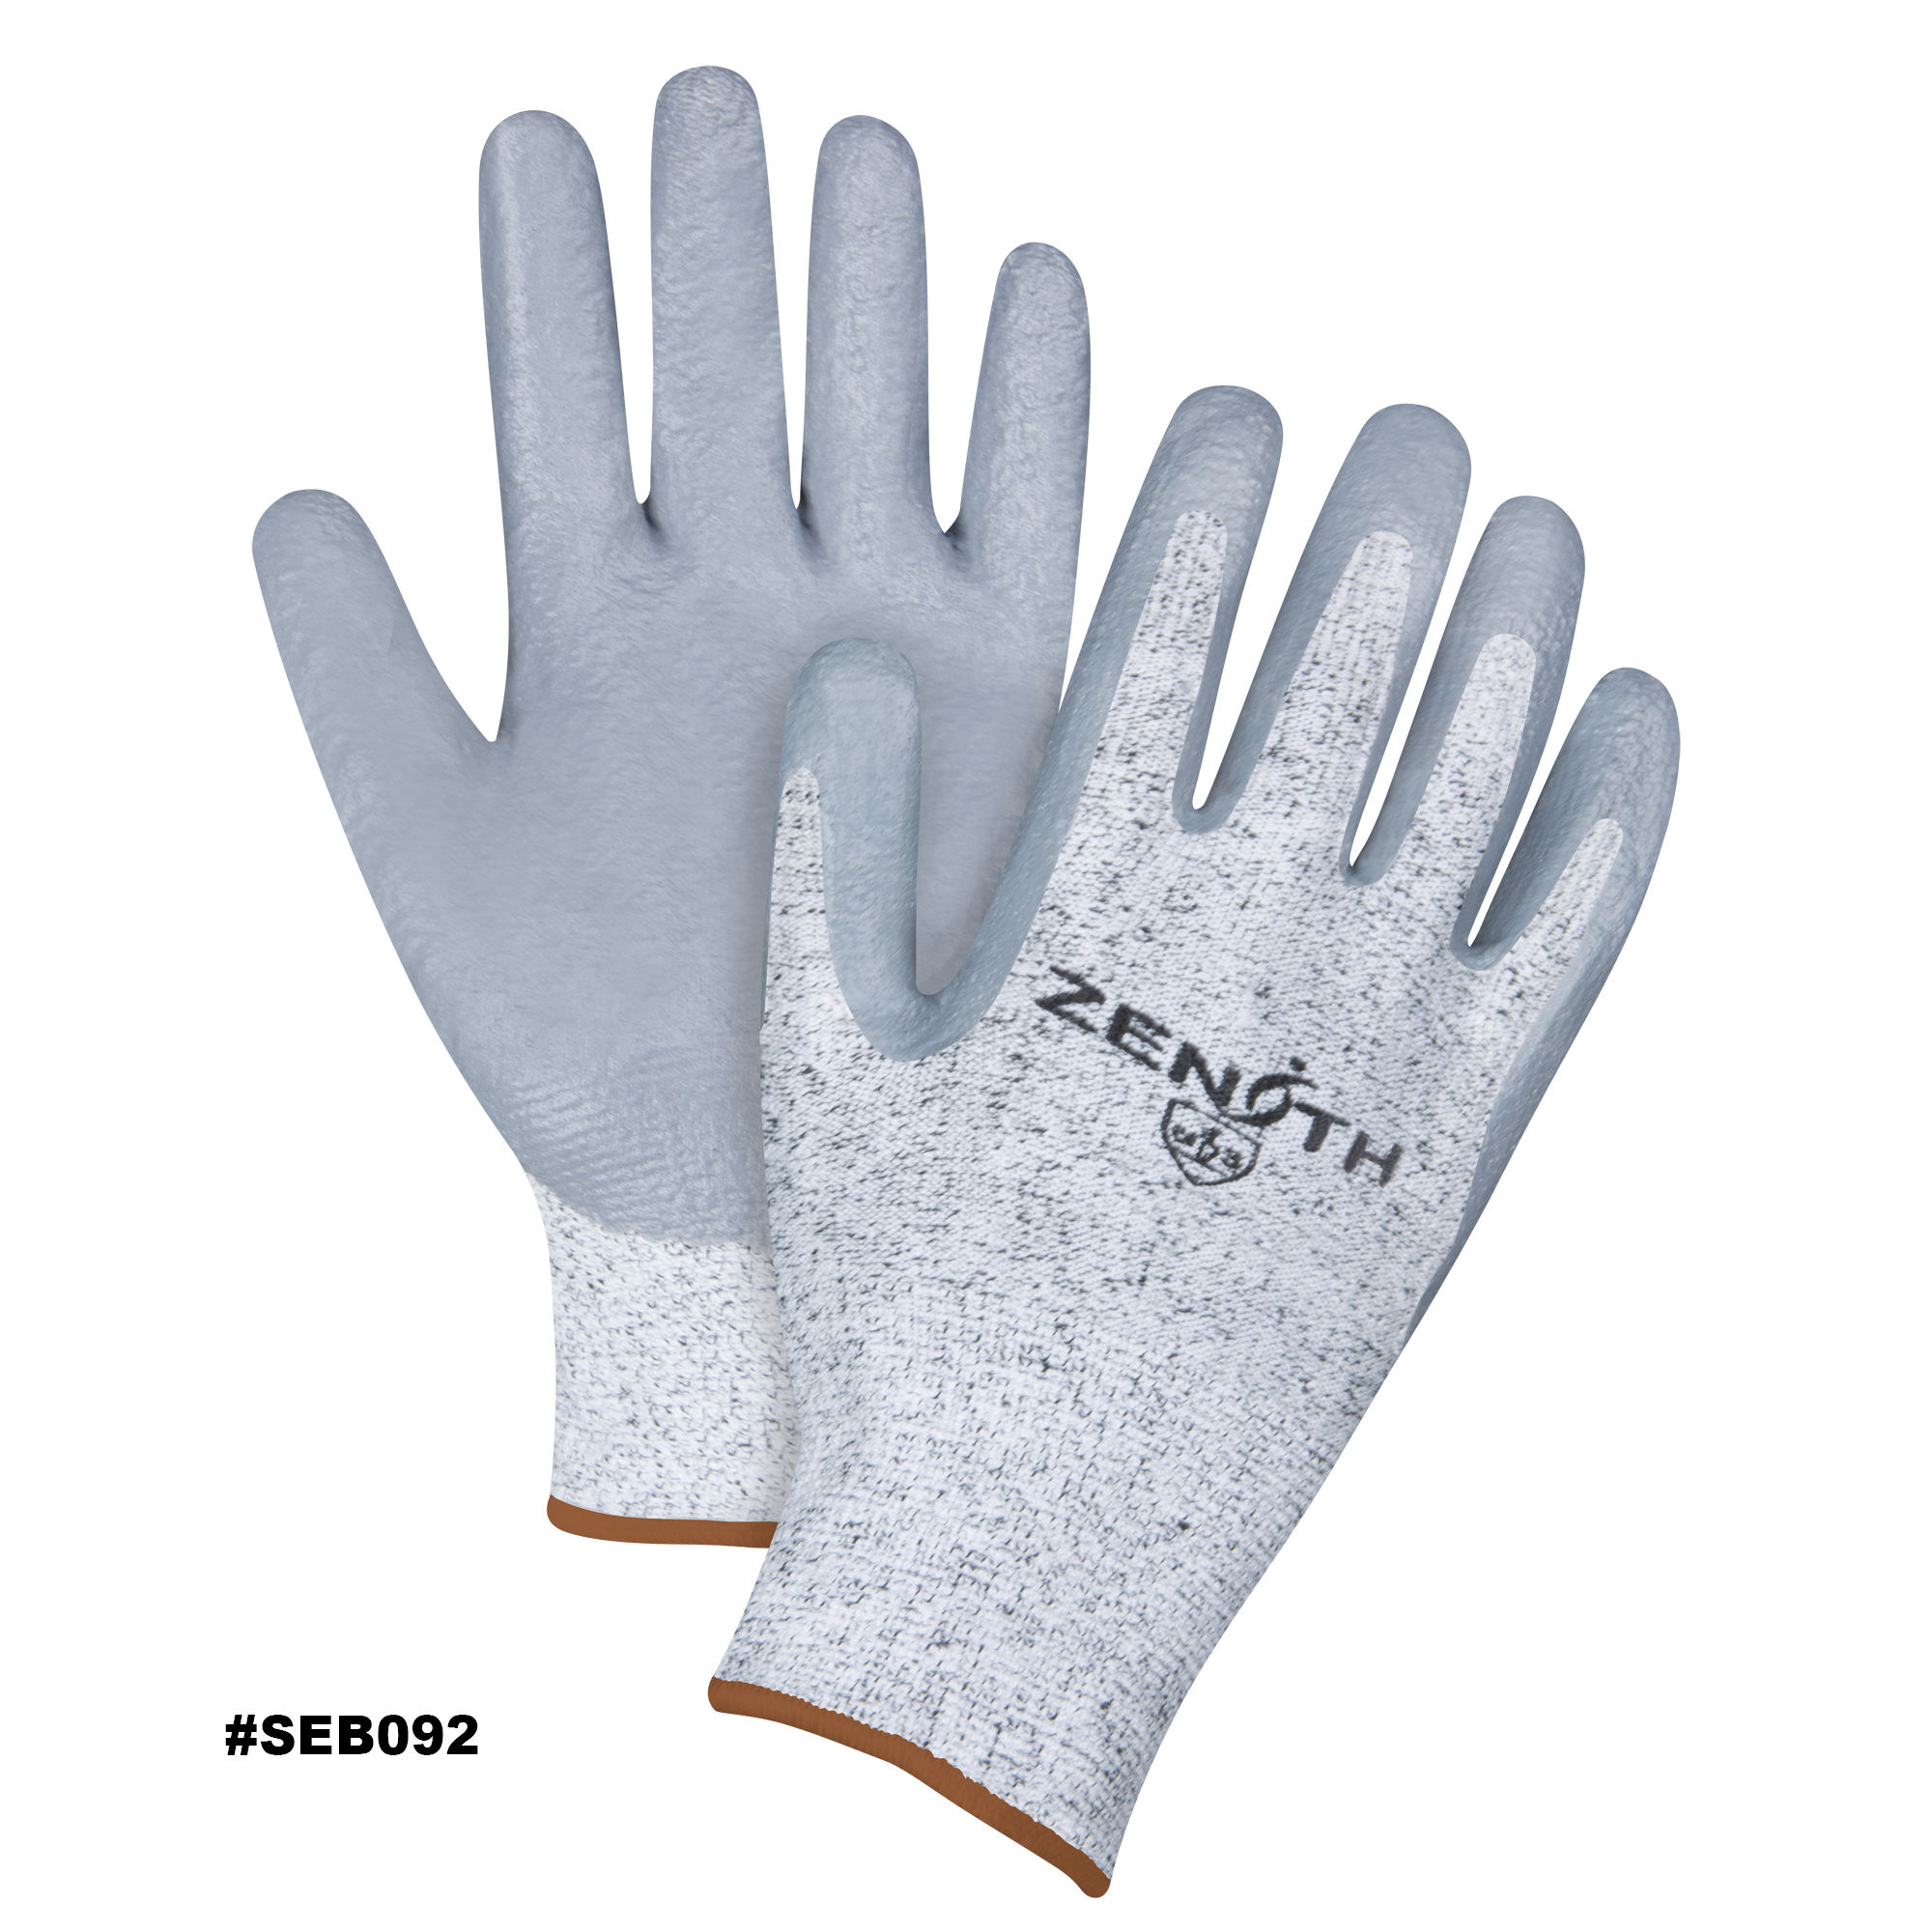 Zenith Coated Gloves, Size Large/9, 13 Gauge, Nitrile Coated, HPPE Shell, EN 388 Level 3/ANSI/ISEA 105 Level 2 Model: SEB092